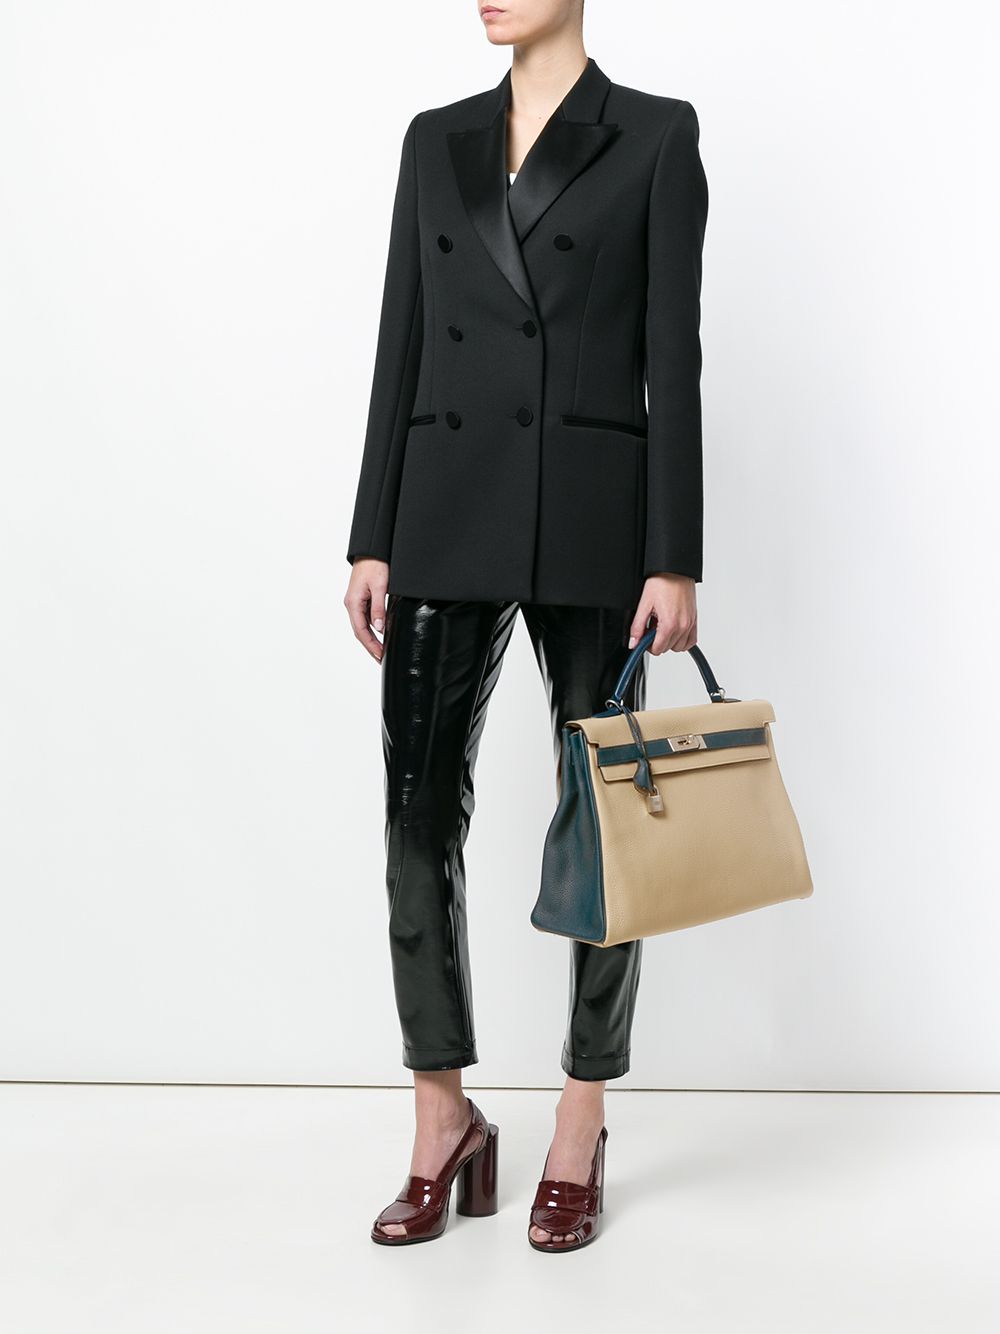 Hermès 40cm Kelly Bag - Farfetch